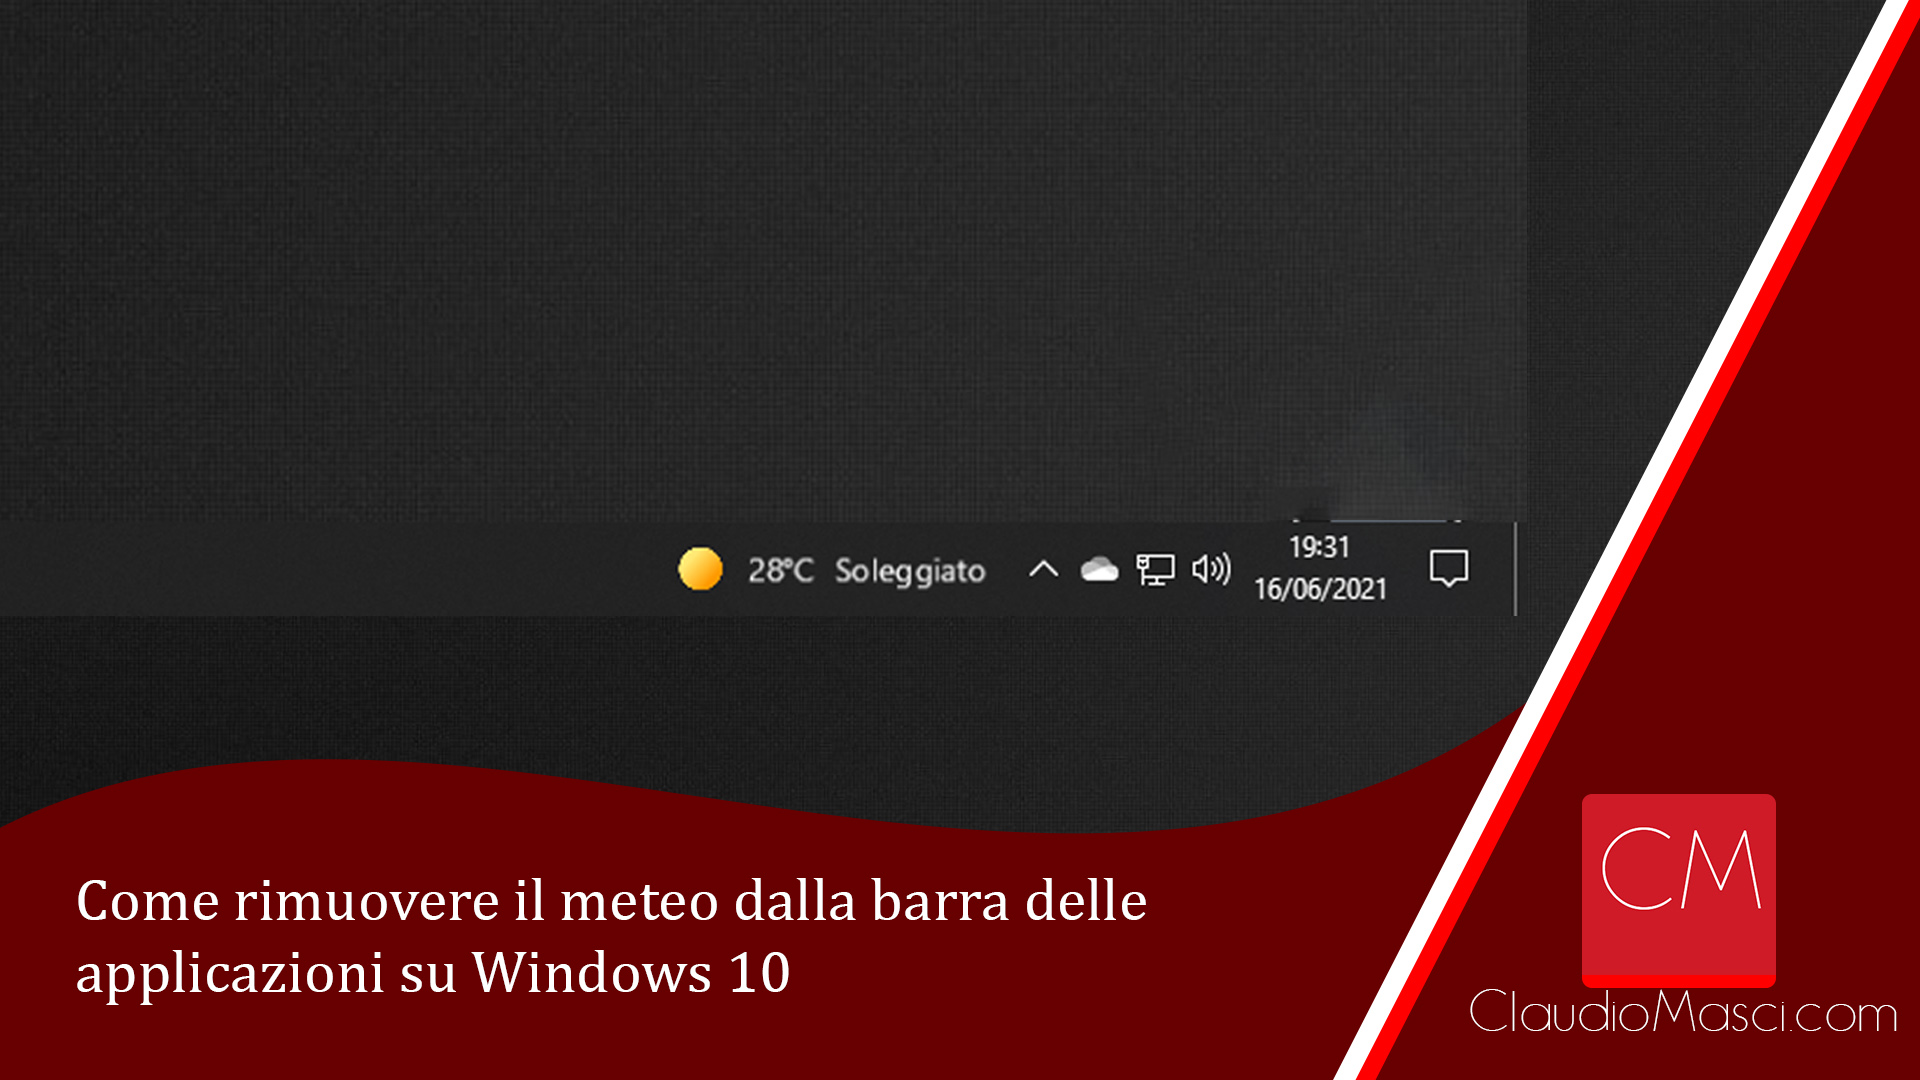 Come rimuovere il meteo dalla barra delle applicazioni su Windows 10